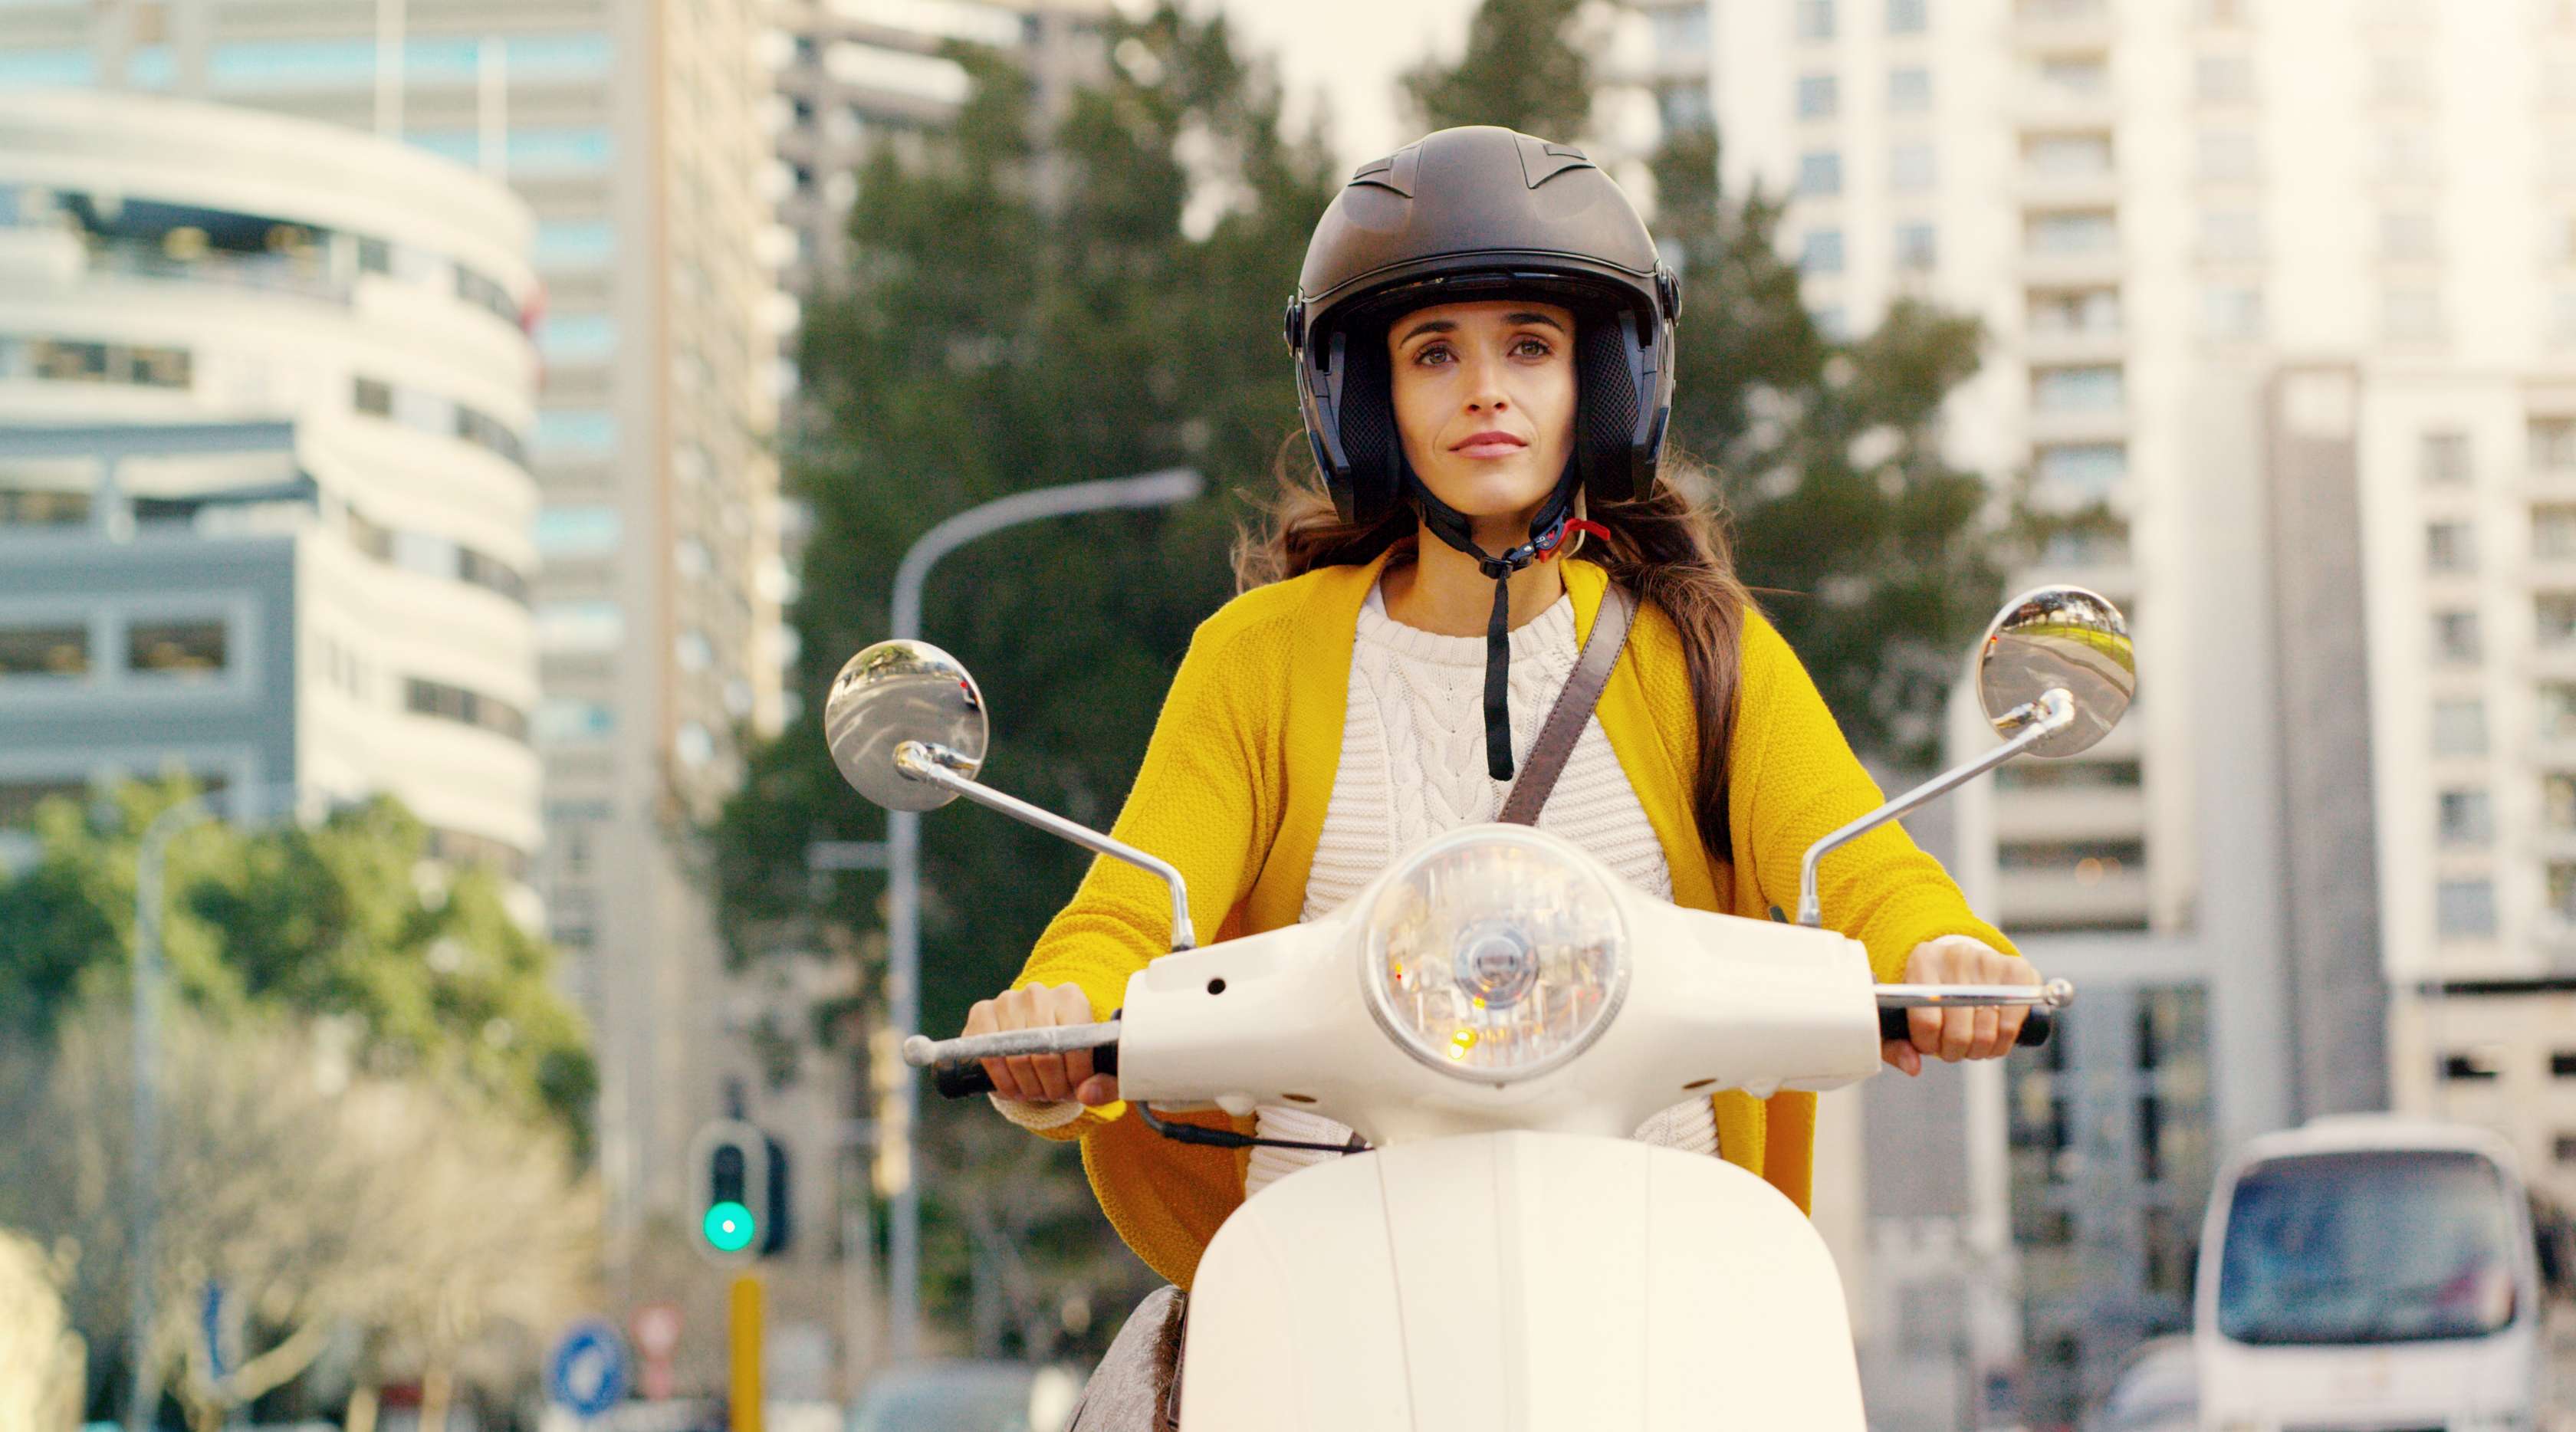 Allianz - Mopedversicherung: Frau auf Moped fährt durch die Stadt